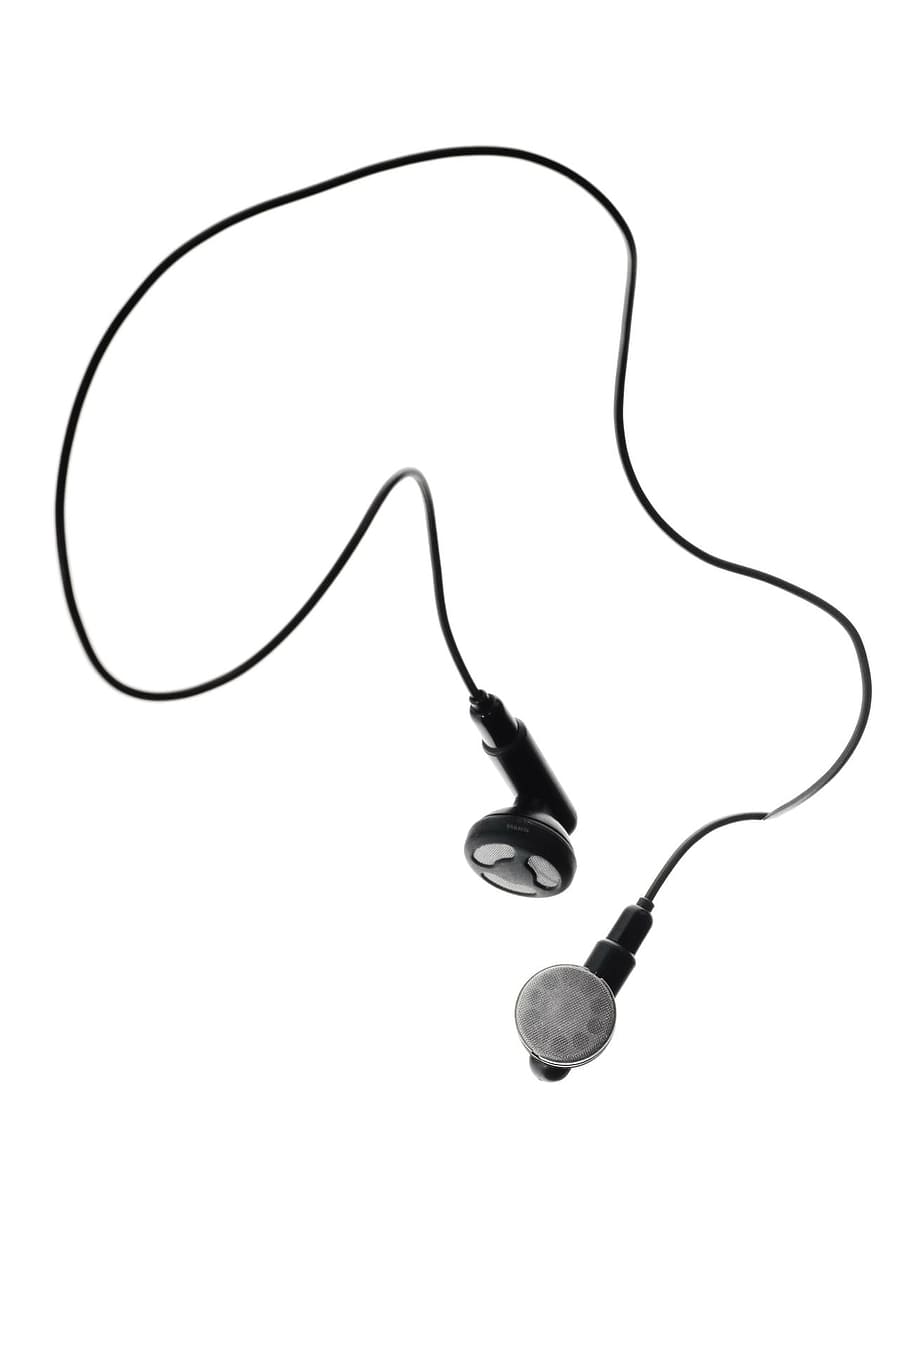 audio, kabel, close-up, ear-bud, earbud, earphone, elektronik, headphone, terisolasi, suara